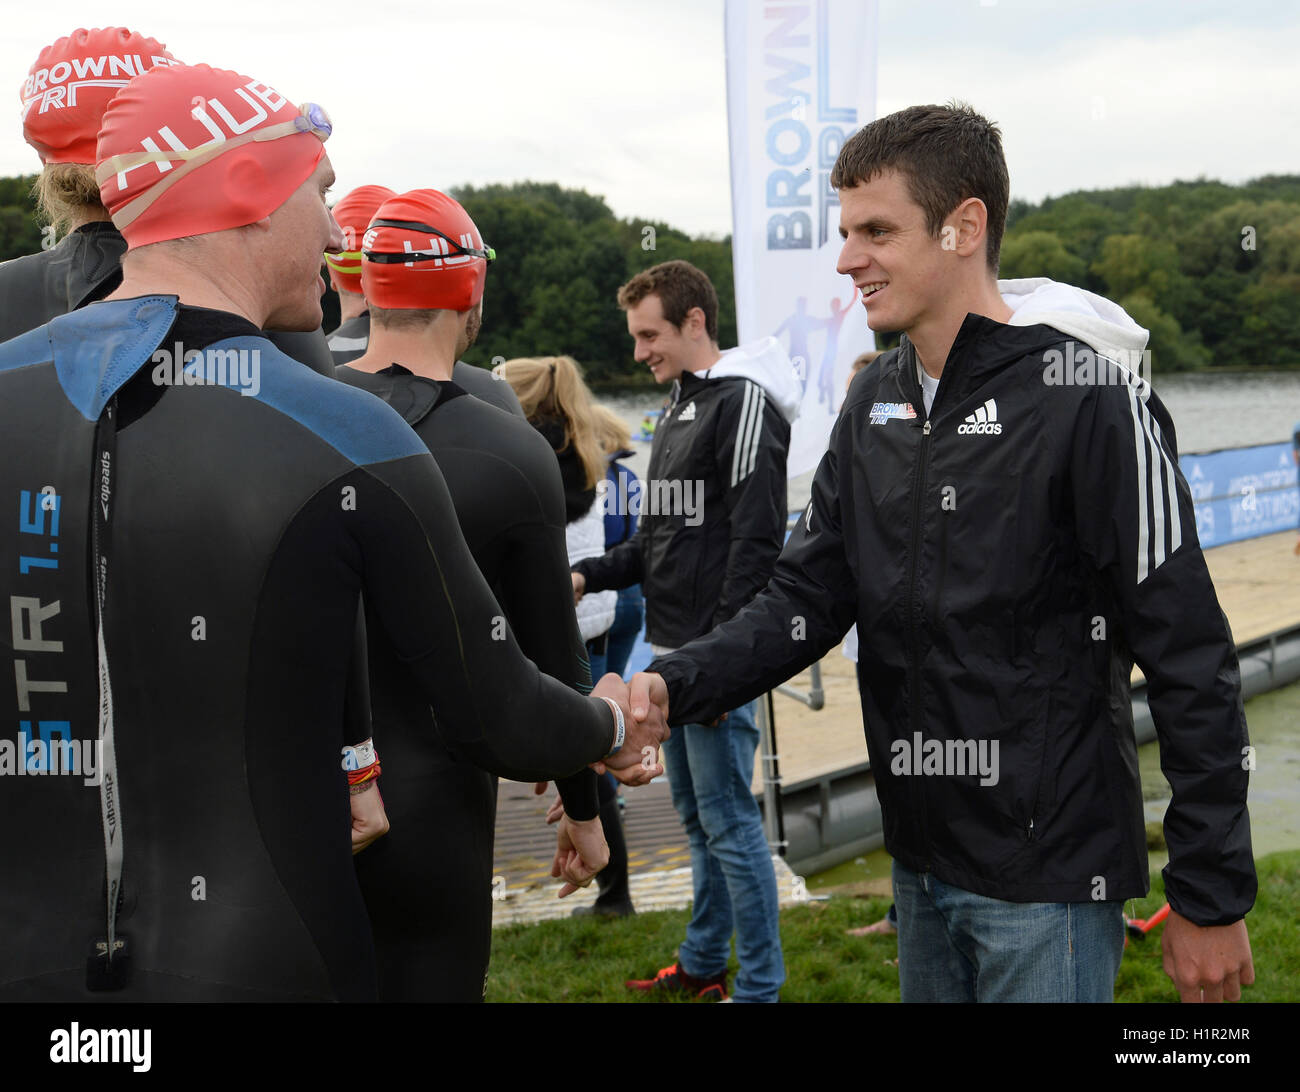 Jonny (destra) e Alistair Brownlee incontrare concorrenti prima di nuotare durante il Brownlee Triathlon al Harewood House, Leeds. Foto Stock